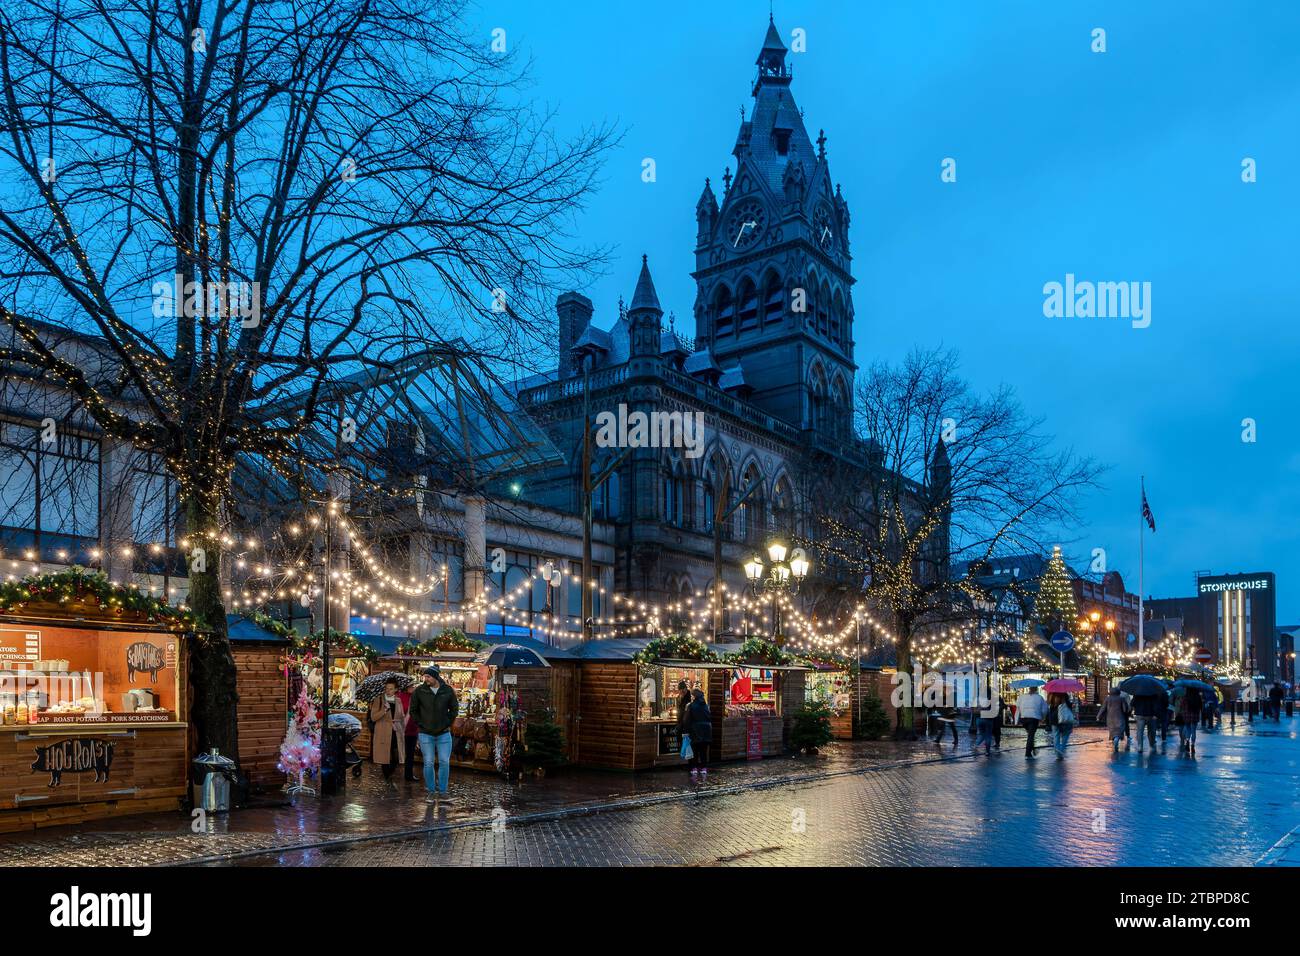 Der Weihnachtsmarkt vor dem Rathaus von Chester sieht im Regen eher trostlos aus. Stockfoto